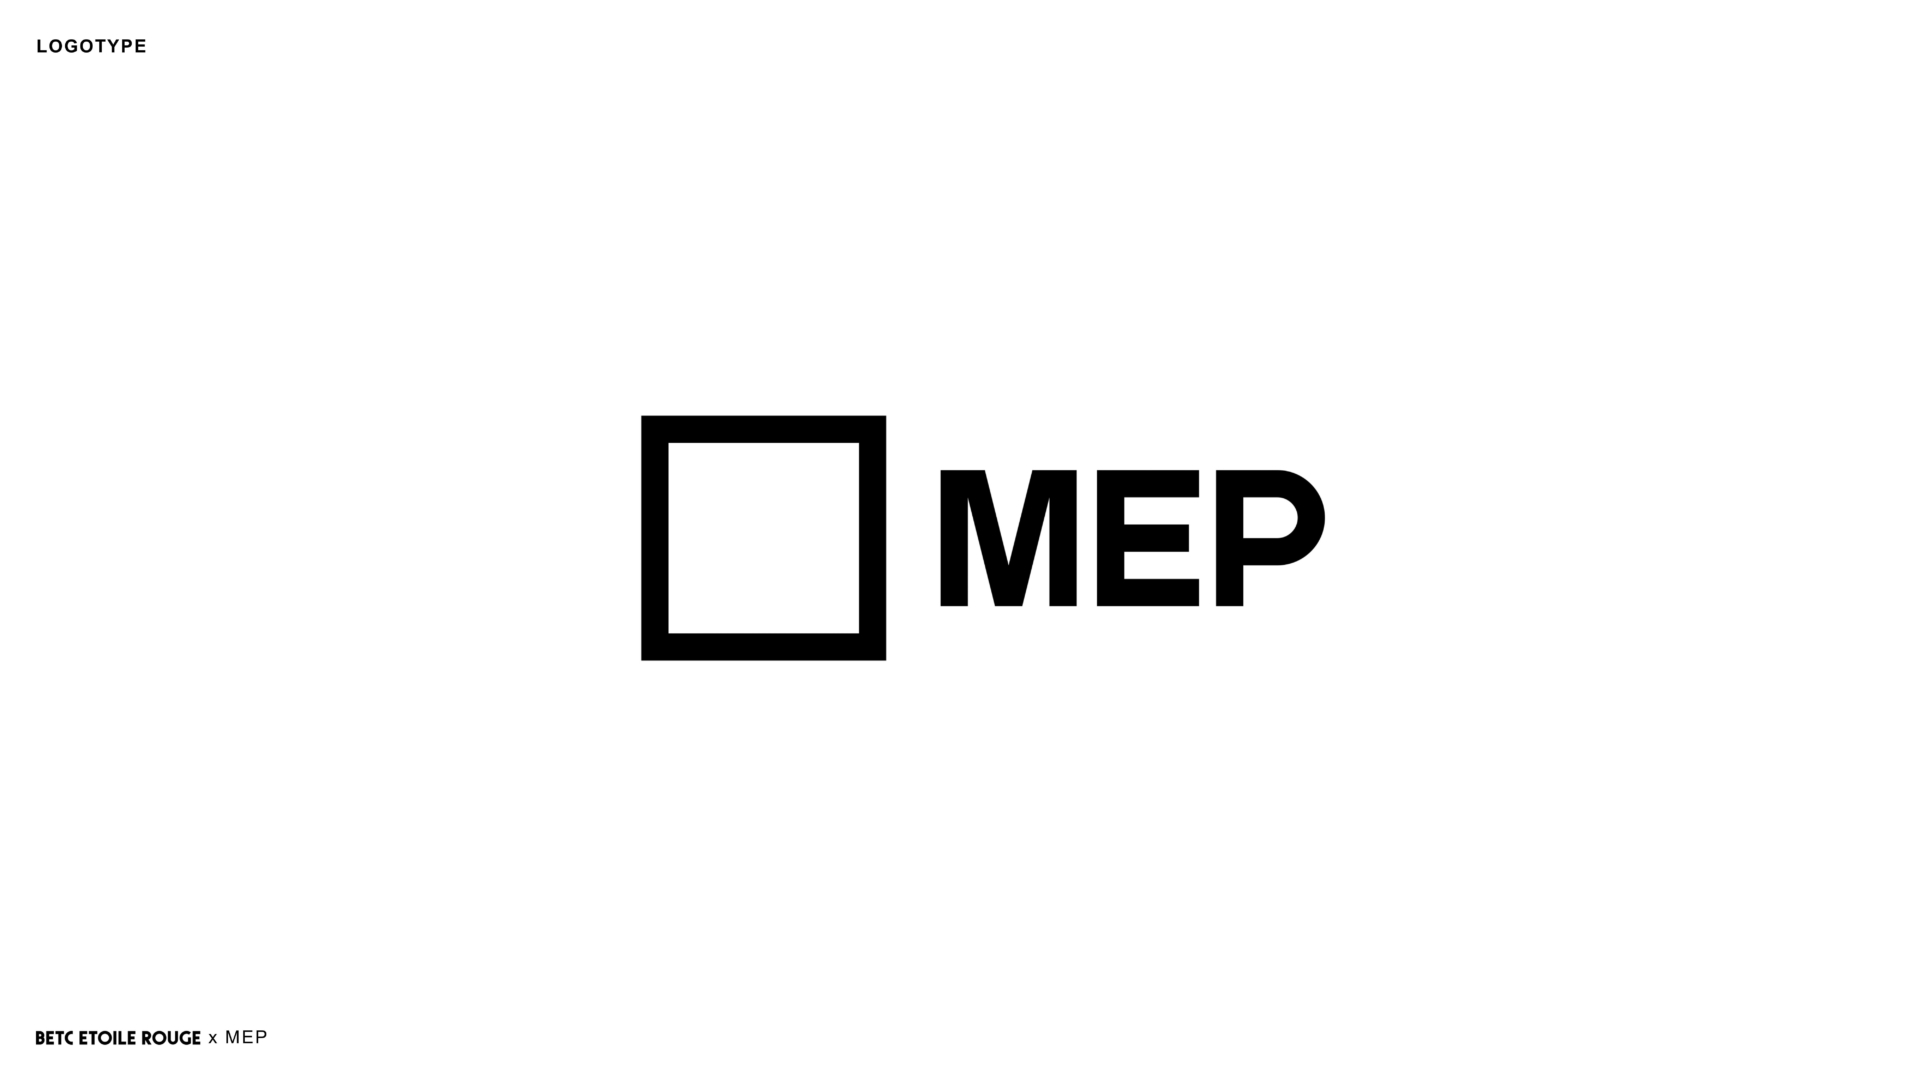 MEP (Maison européenne de la photographie)